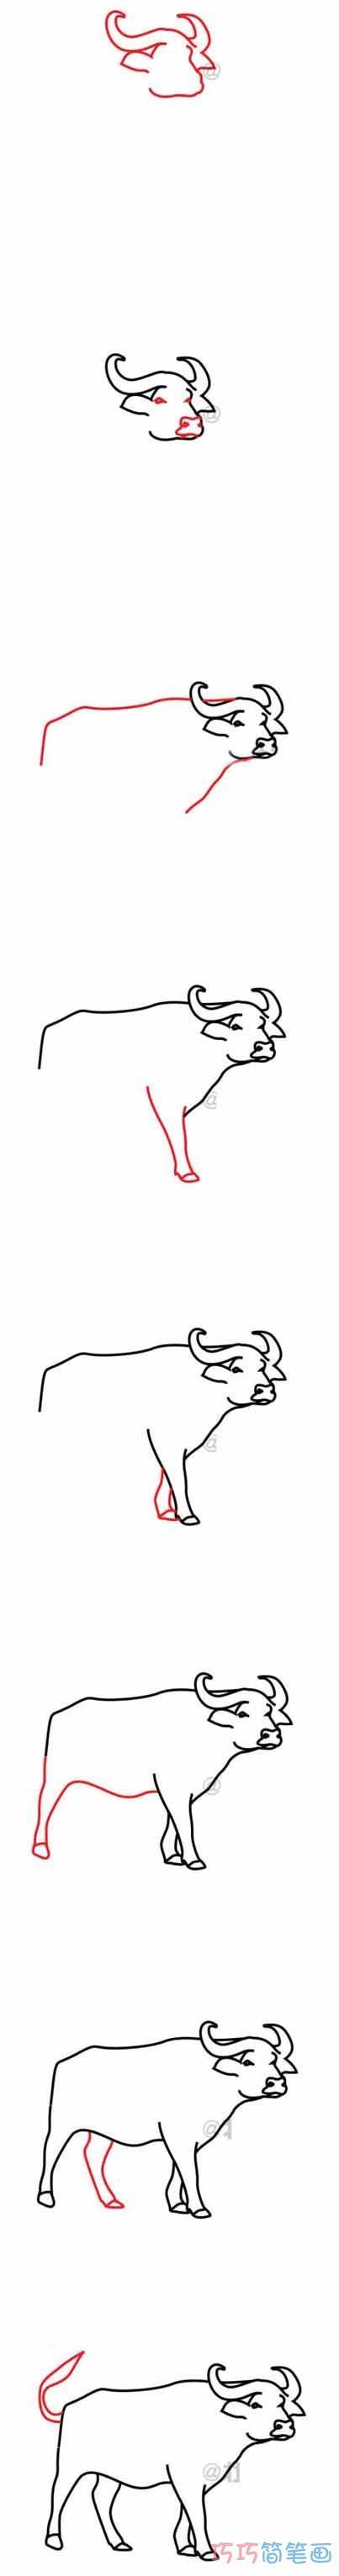 水牛的简笔画 水牛的简笔画图片大全